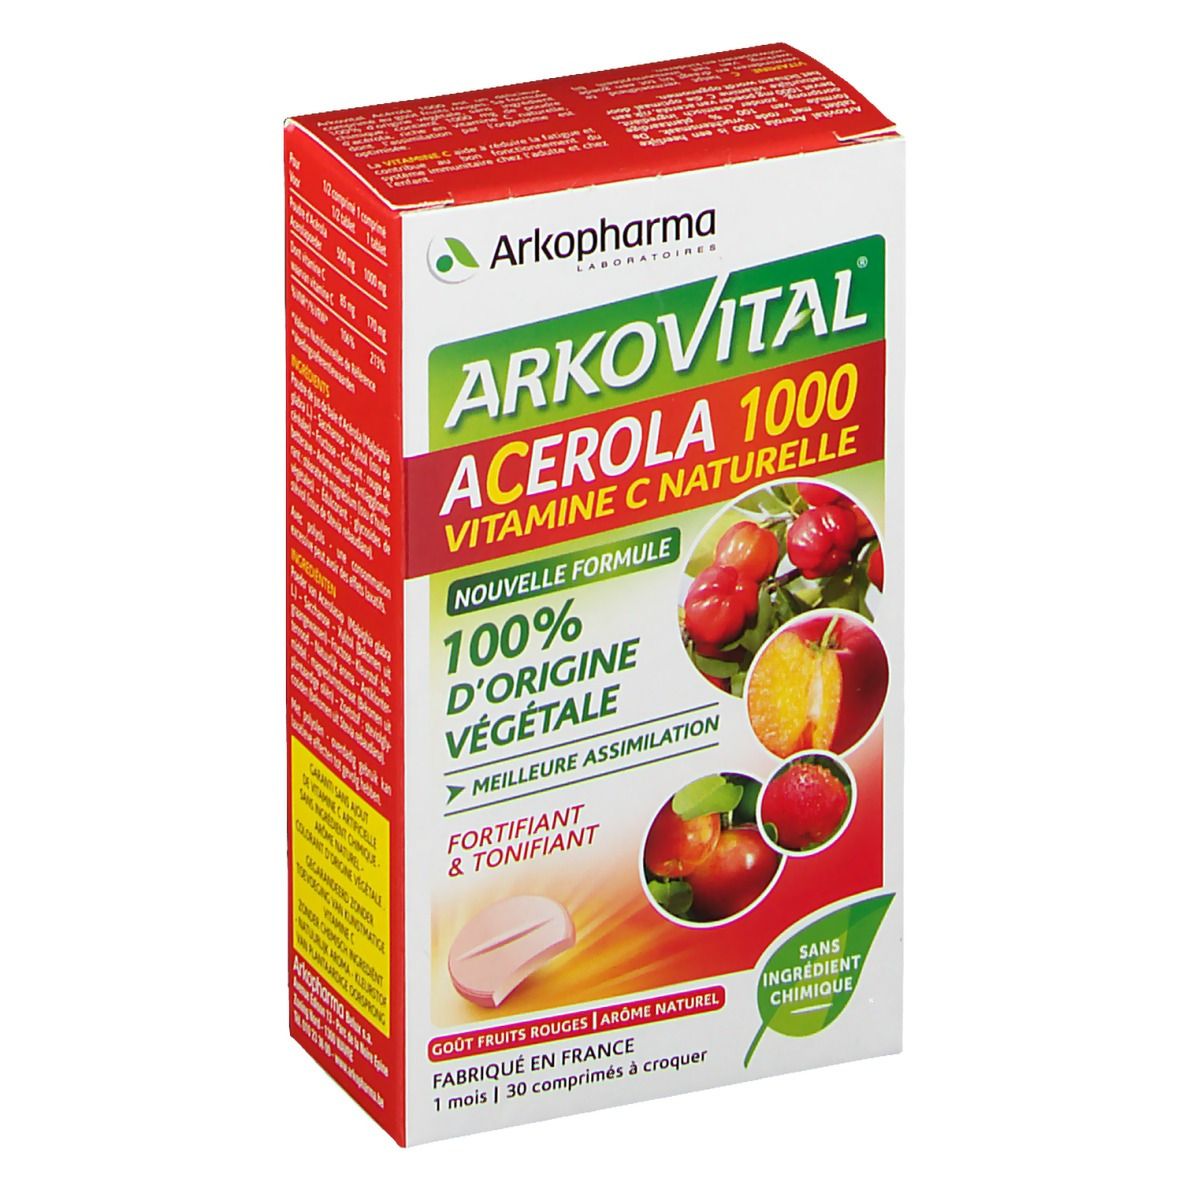 Image of Arkopharma Arkovital® Acérola 1000 Vitamin C